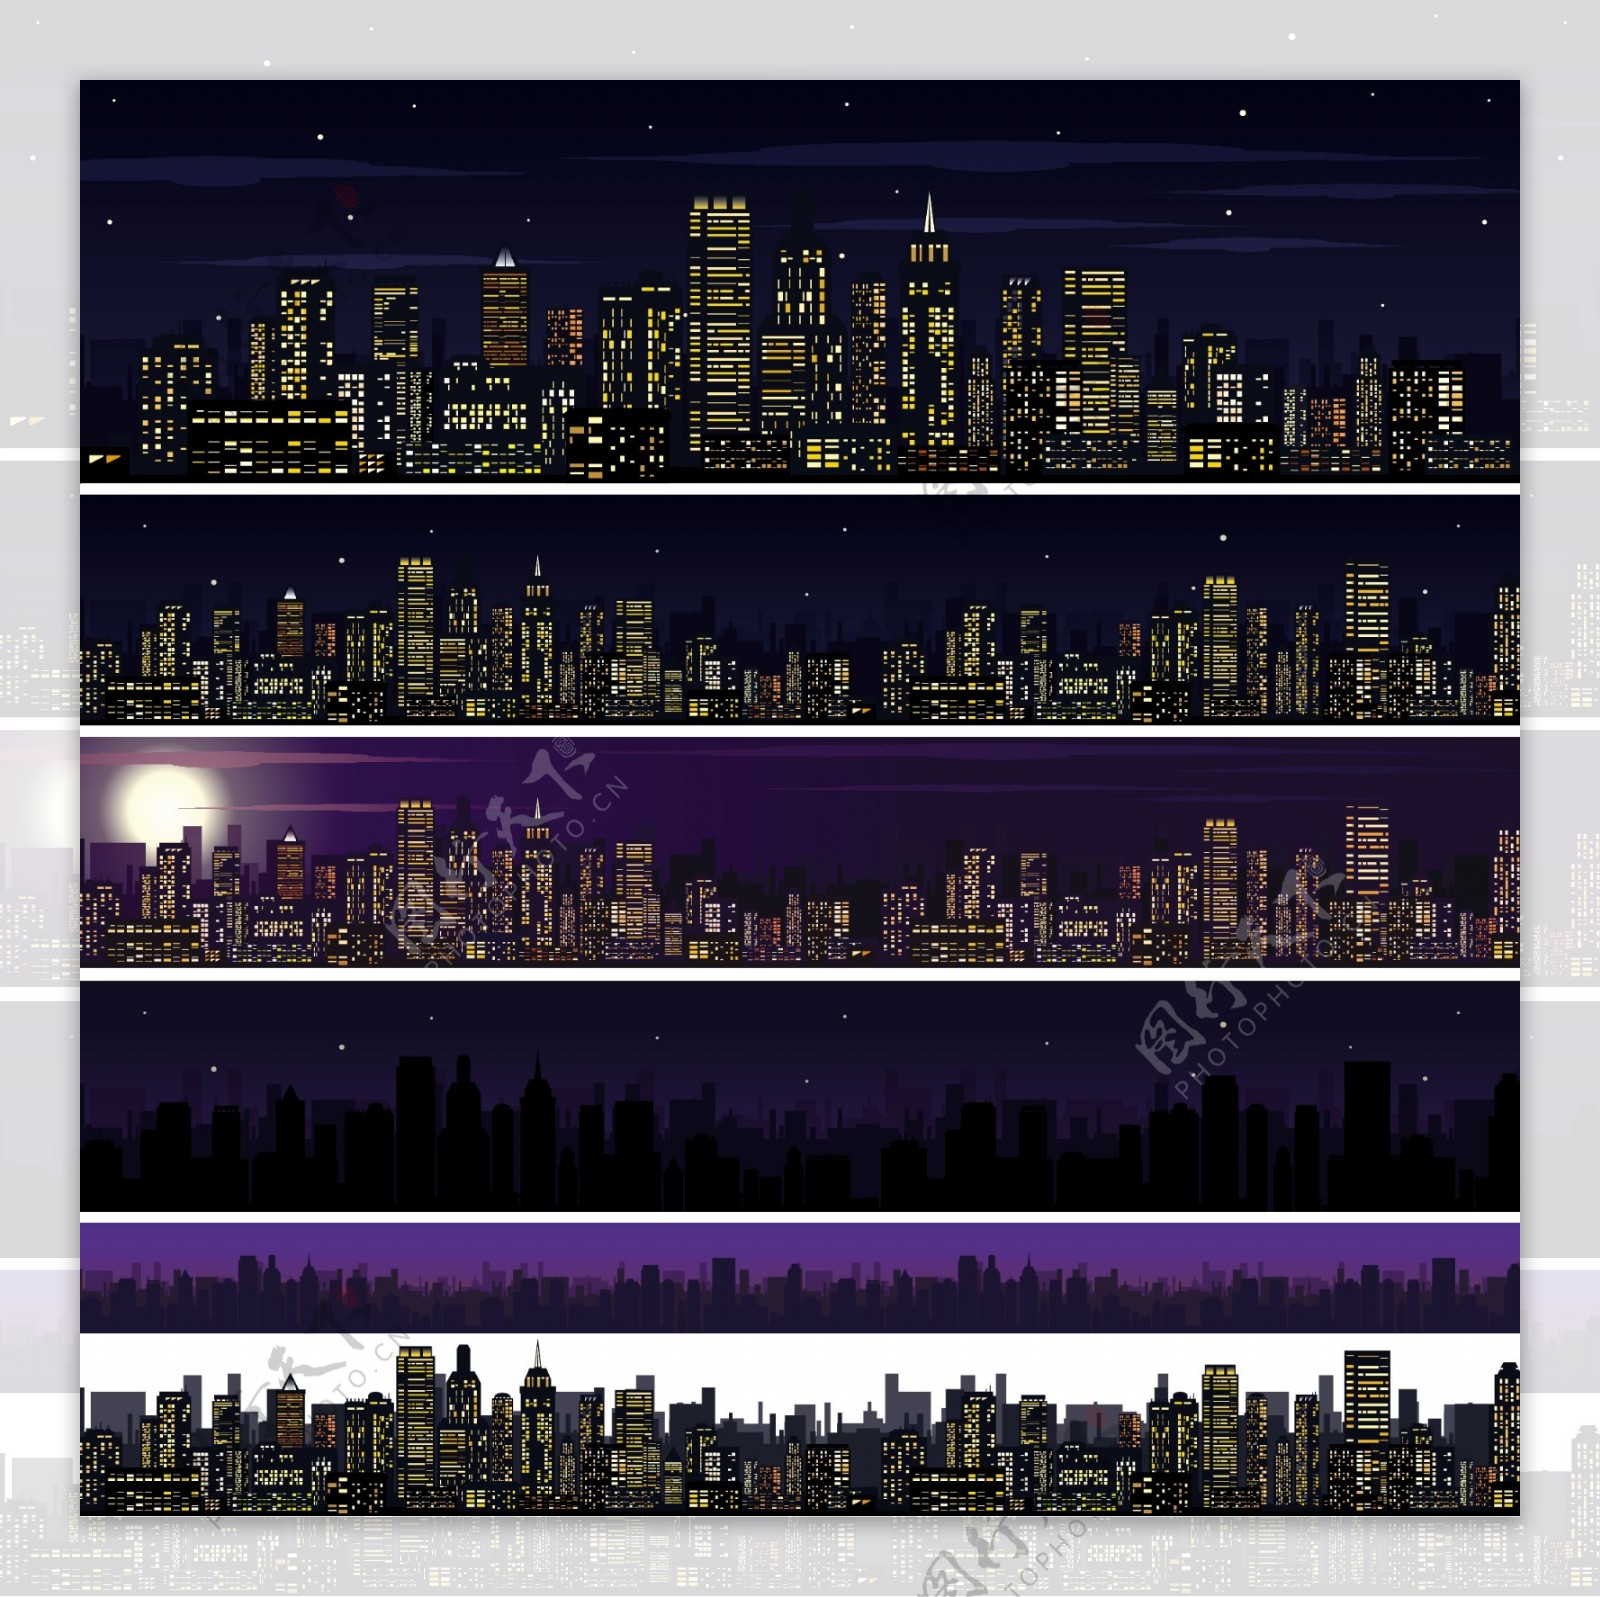 繁华的都市夜景图片